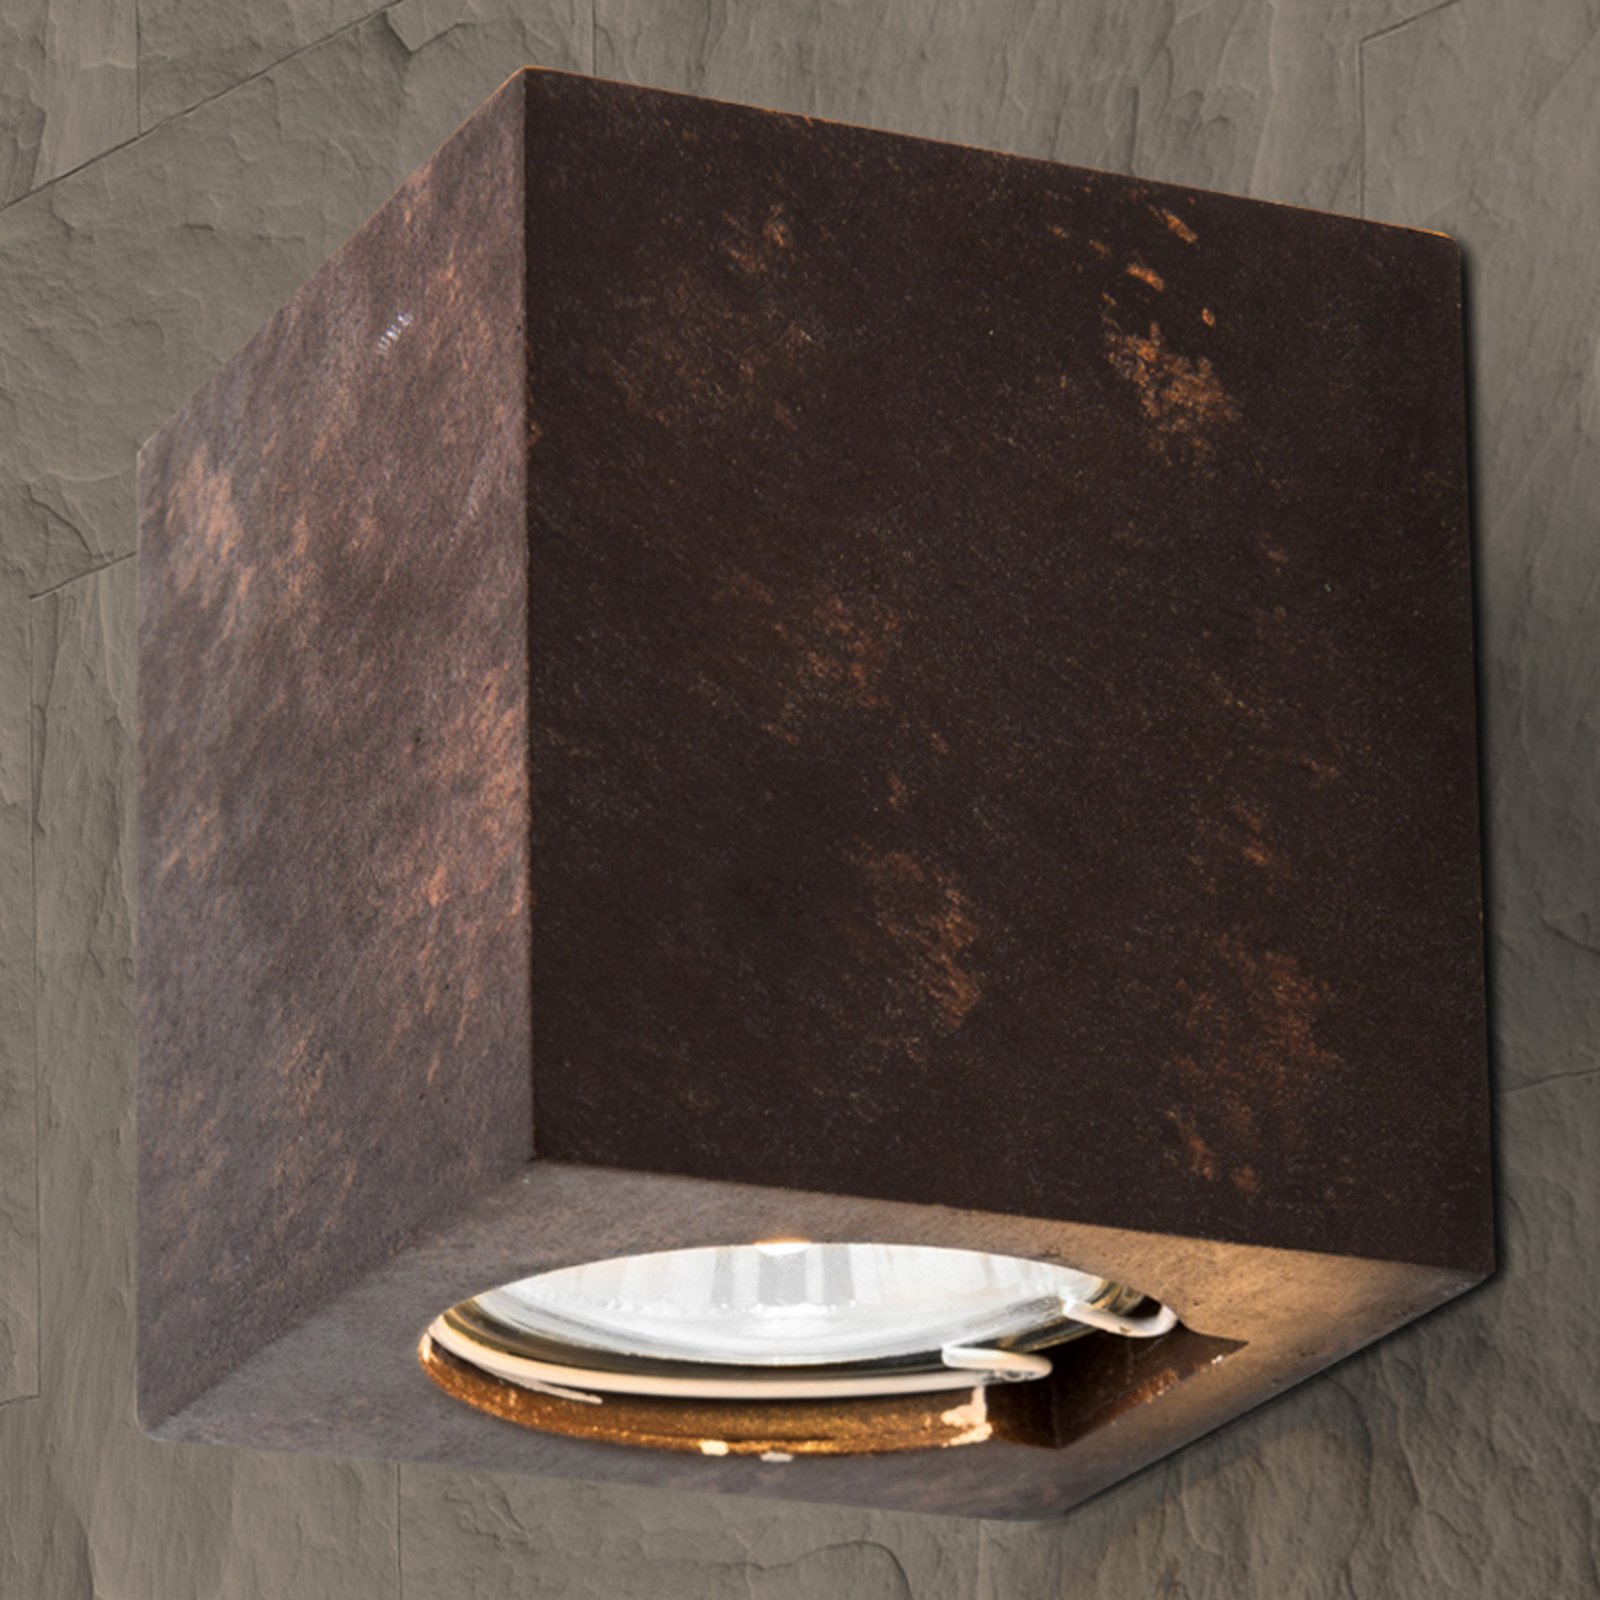 Aplique Cube de cerámica alto 7,5cm marrón rojizo